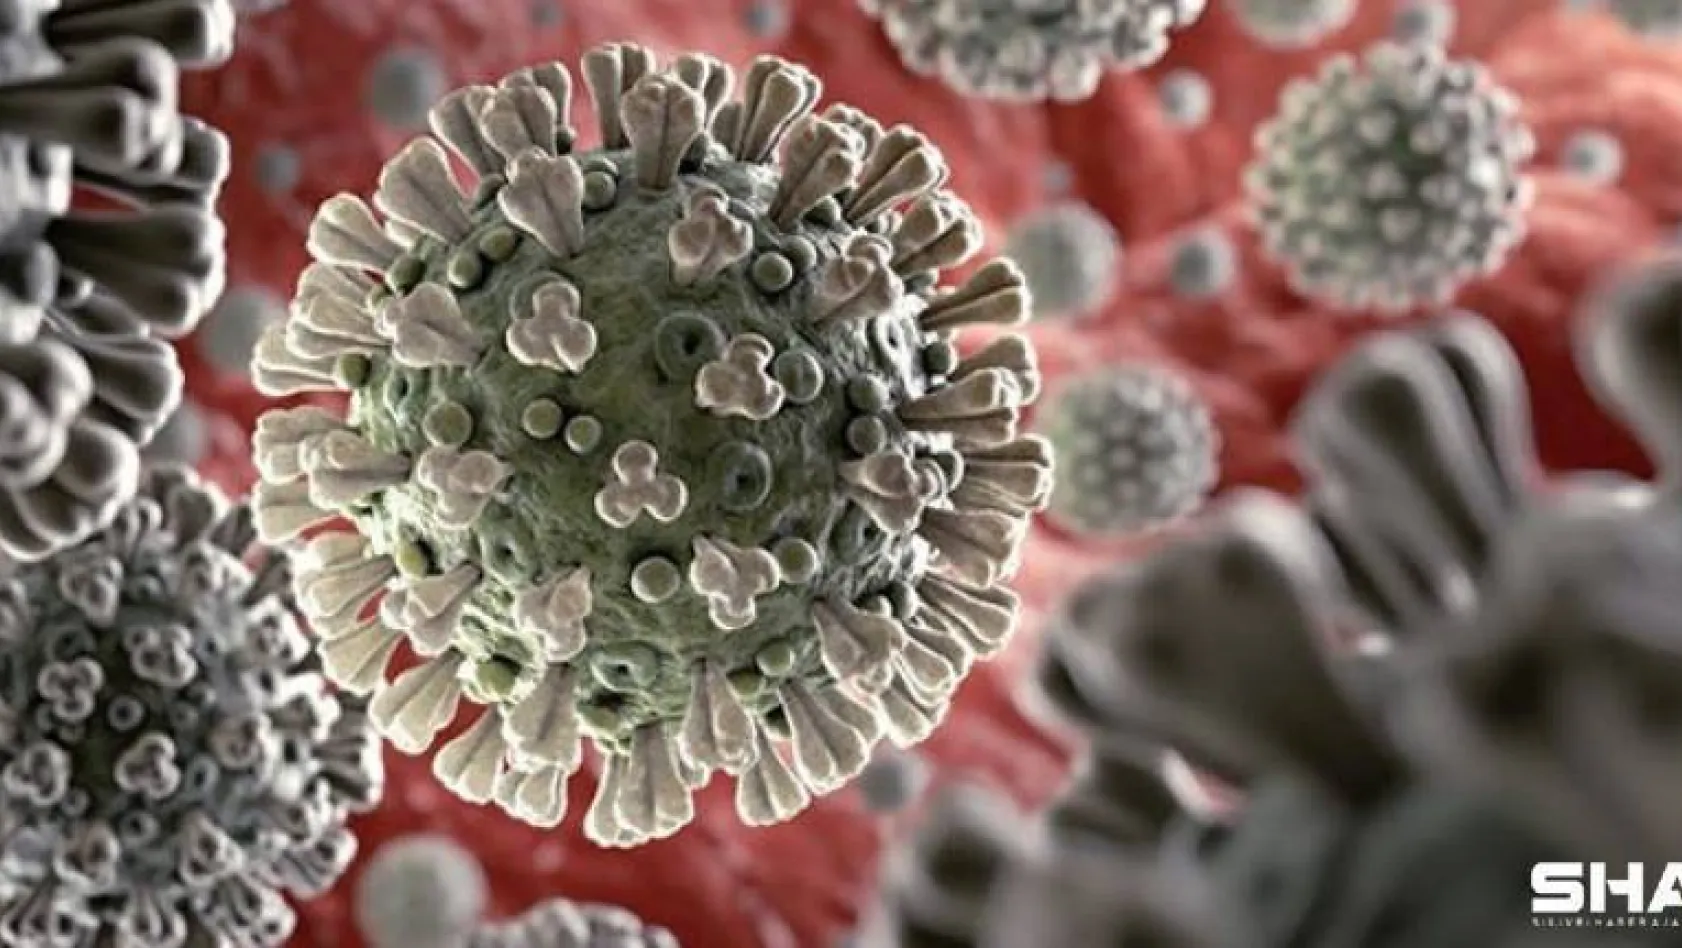 Türkiye'de son 24 saatte 7.325 koronavirüs vakası tespit edildi